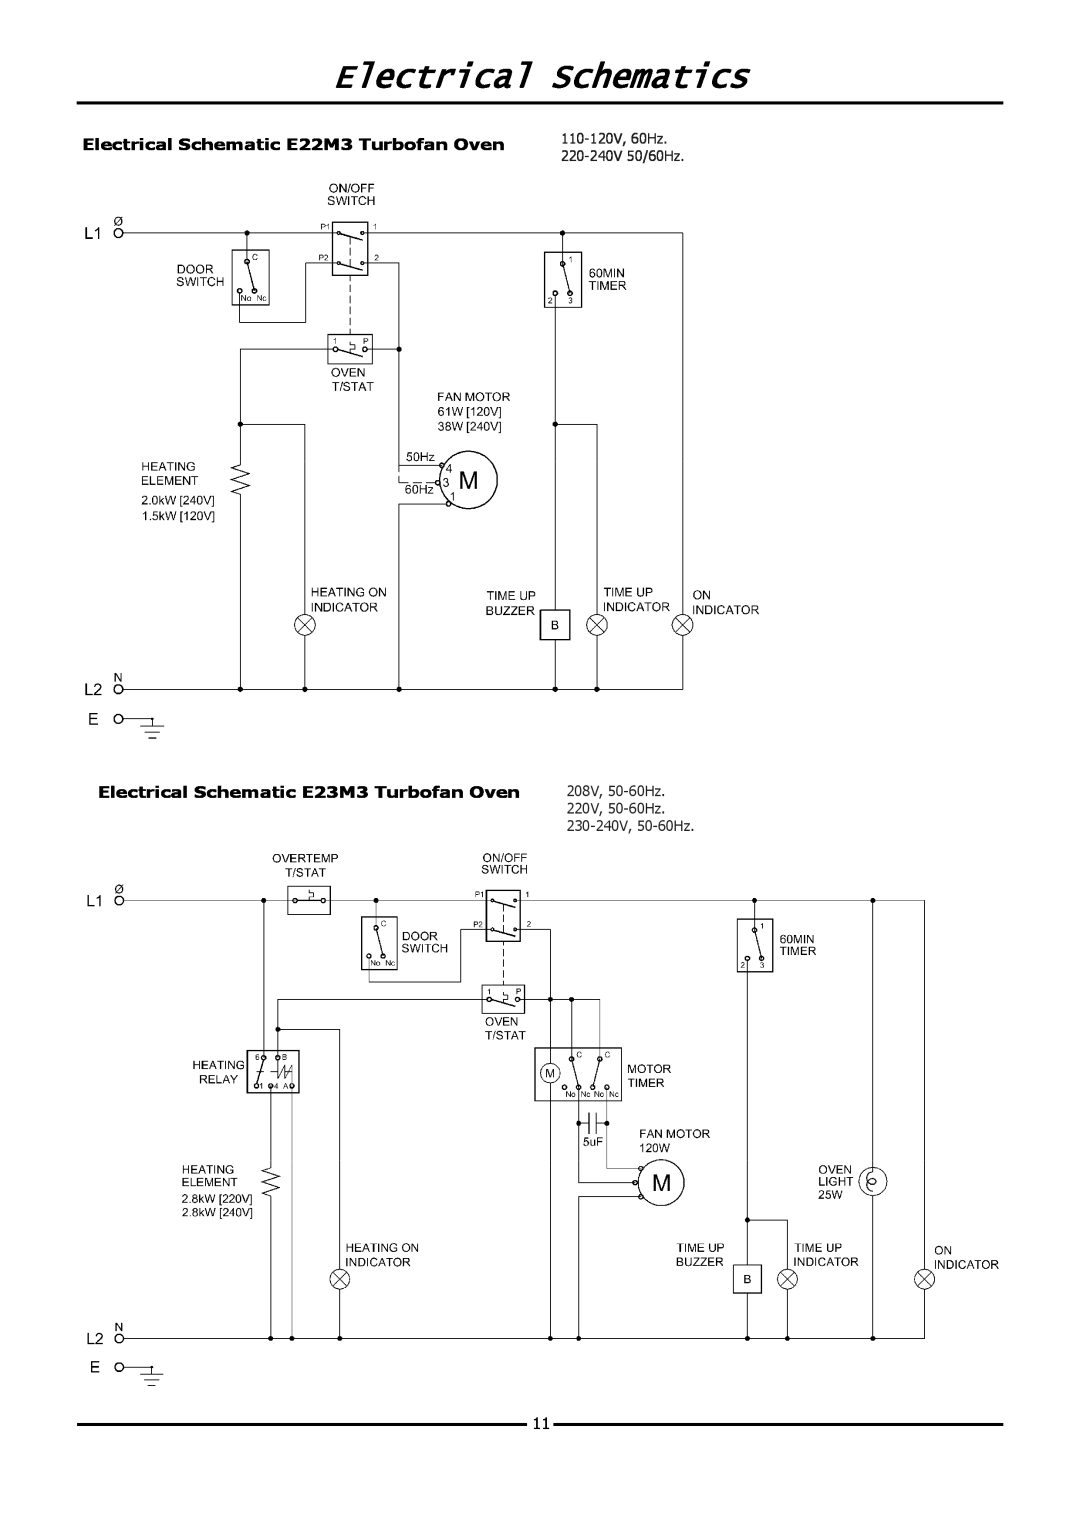 Moffat E20M Electrical Schematics, 110-120V,60Hz, 220-240V50/60Hz, 208V, 50-60Hz, 220V, 50-60Hz, 230-240V, 50-60Hz 